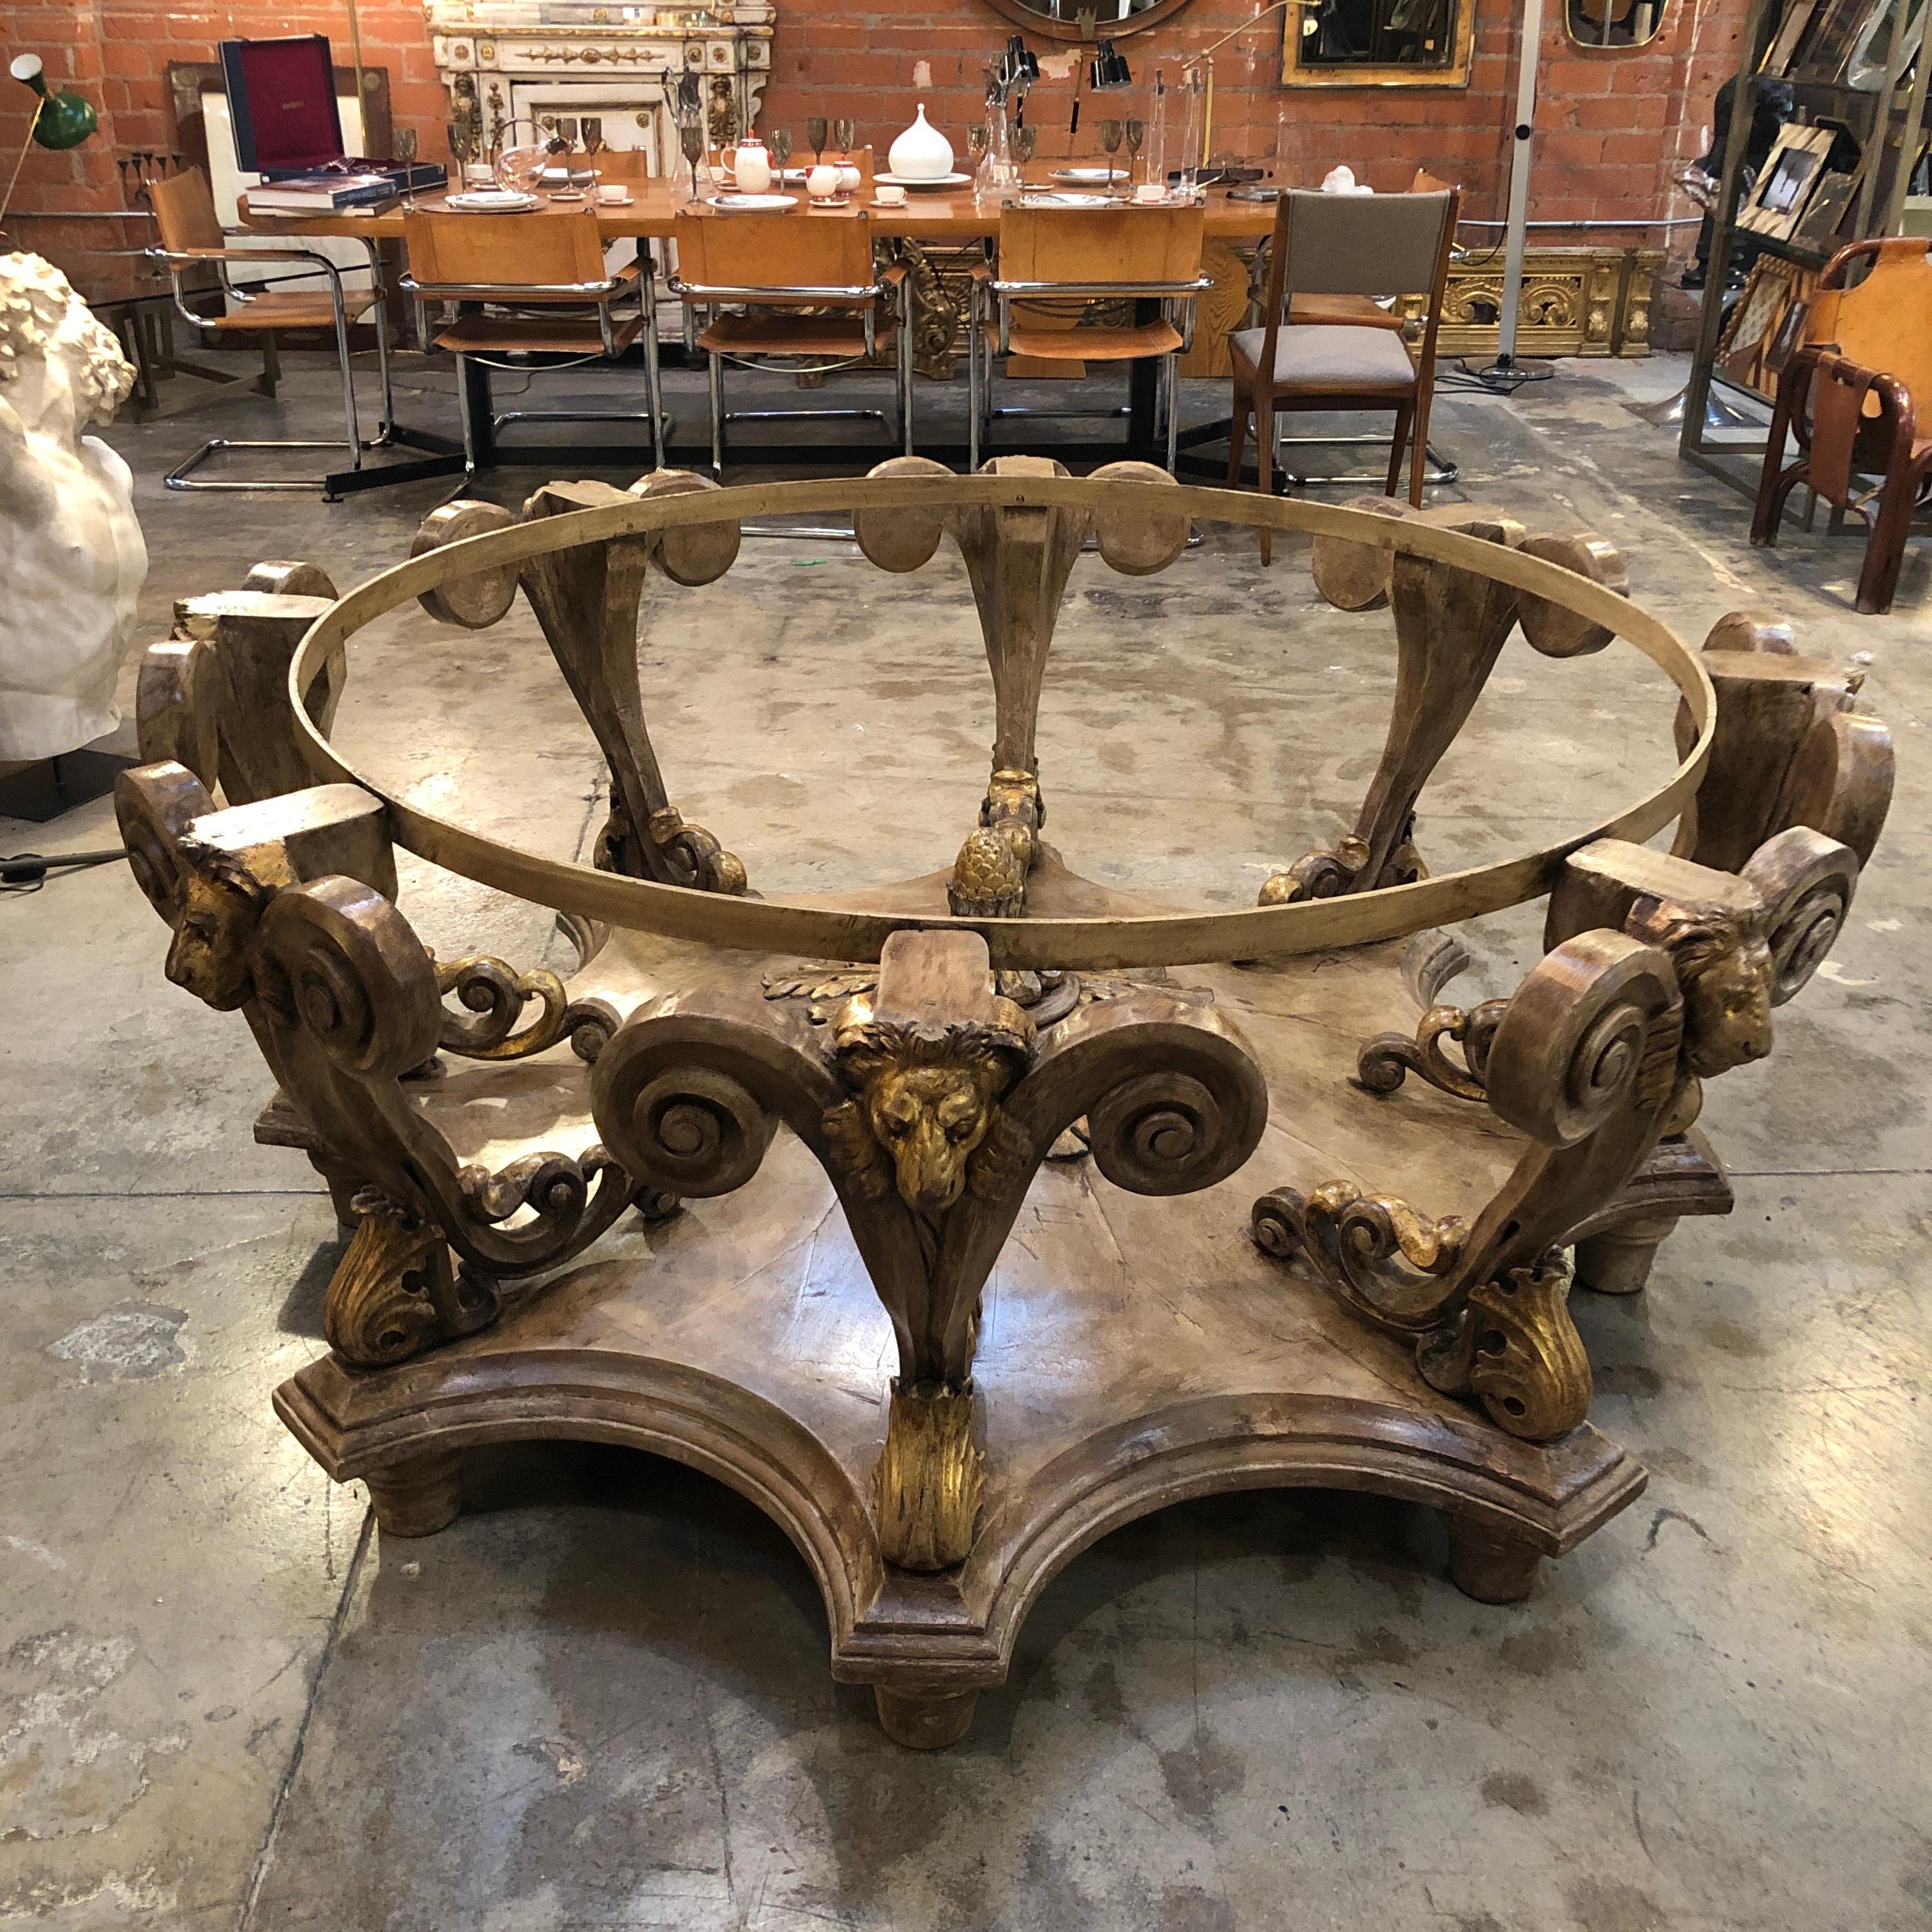 Mesa redonda antigua de estilo barroco italiano. El artículo tiene una tapa de cristal, madera de haya maciza tallada a mano, una base de pedestal de 2,5 m y un deseable acabado pintado en color envejecido. Se cree que la base es de principios del